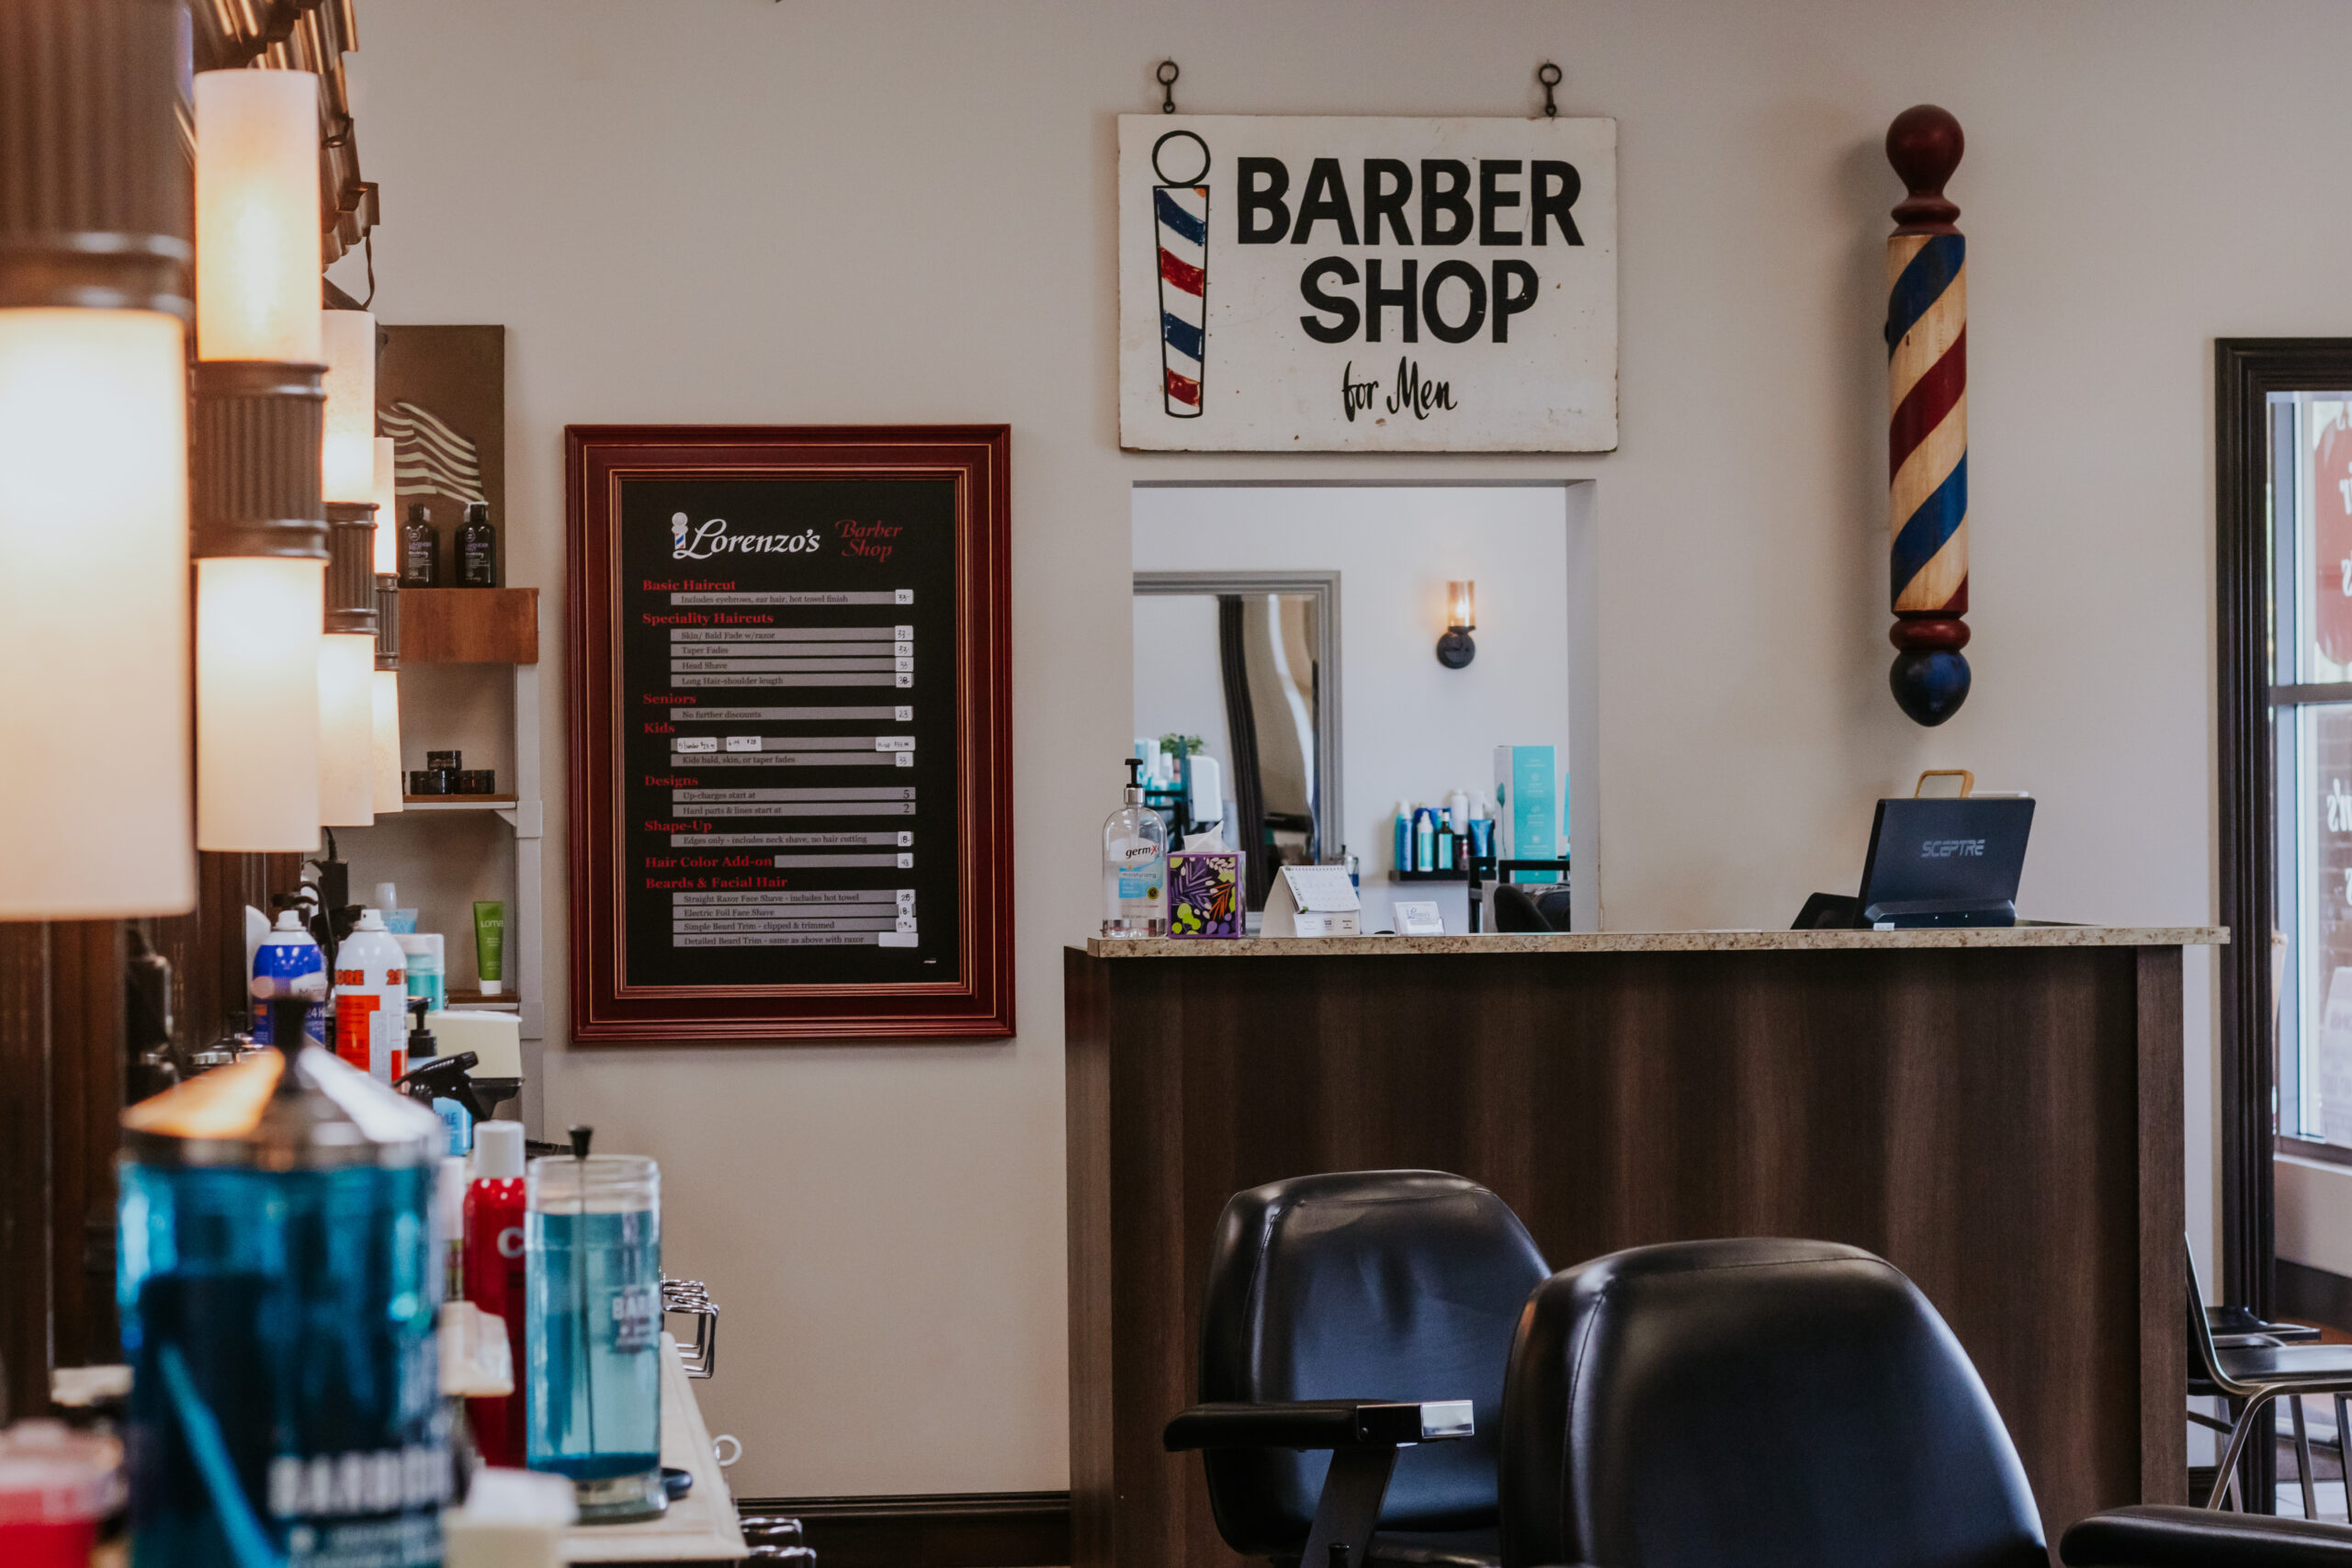 Boys Haircuts - Detroit Barber Co.